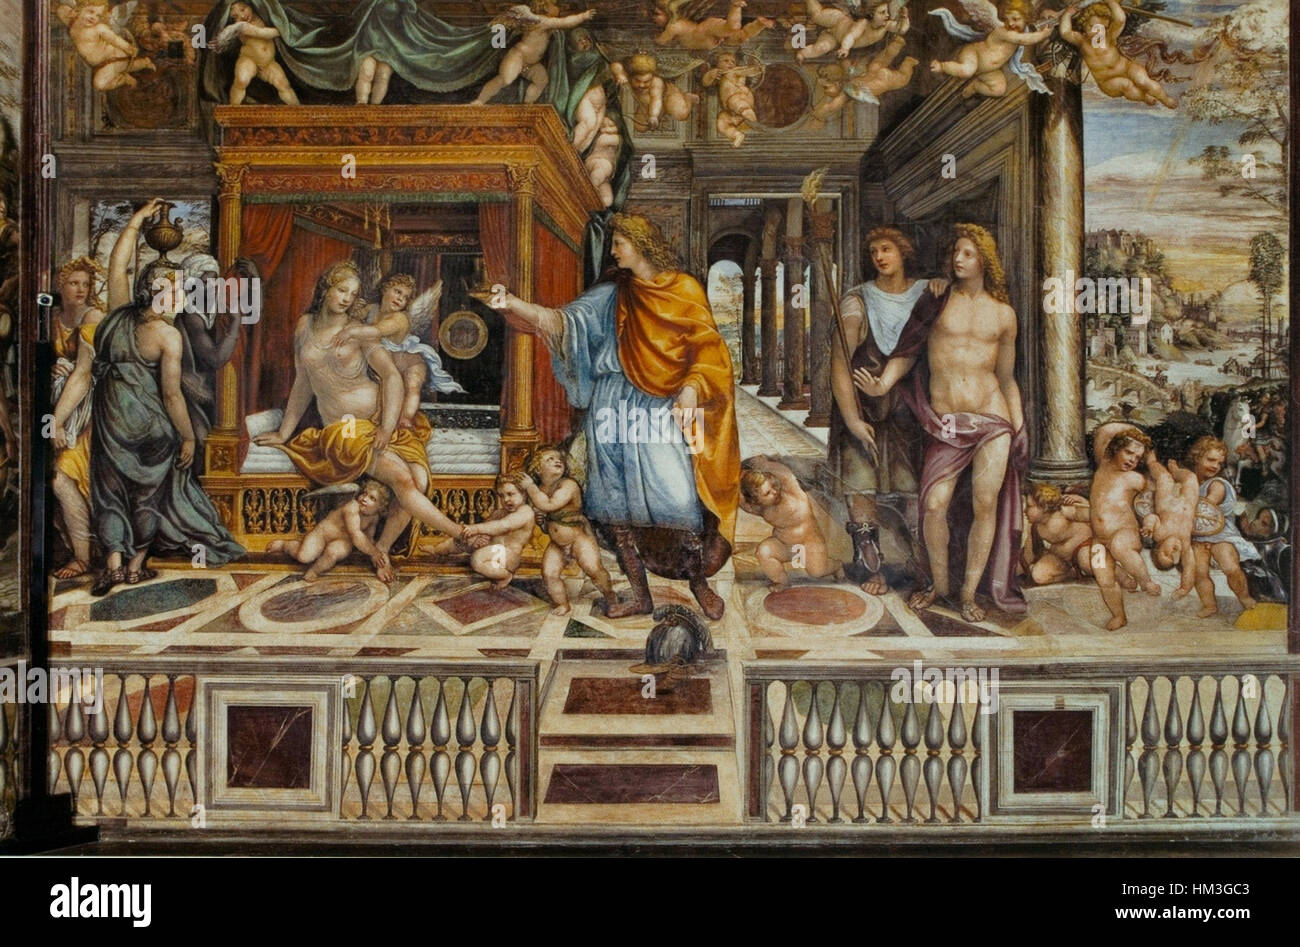 Il Sodoma. Villa Farnesina fresco1 Stock Photo